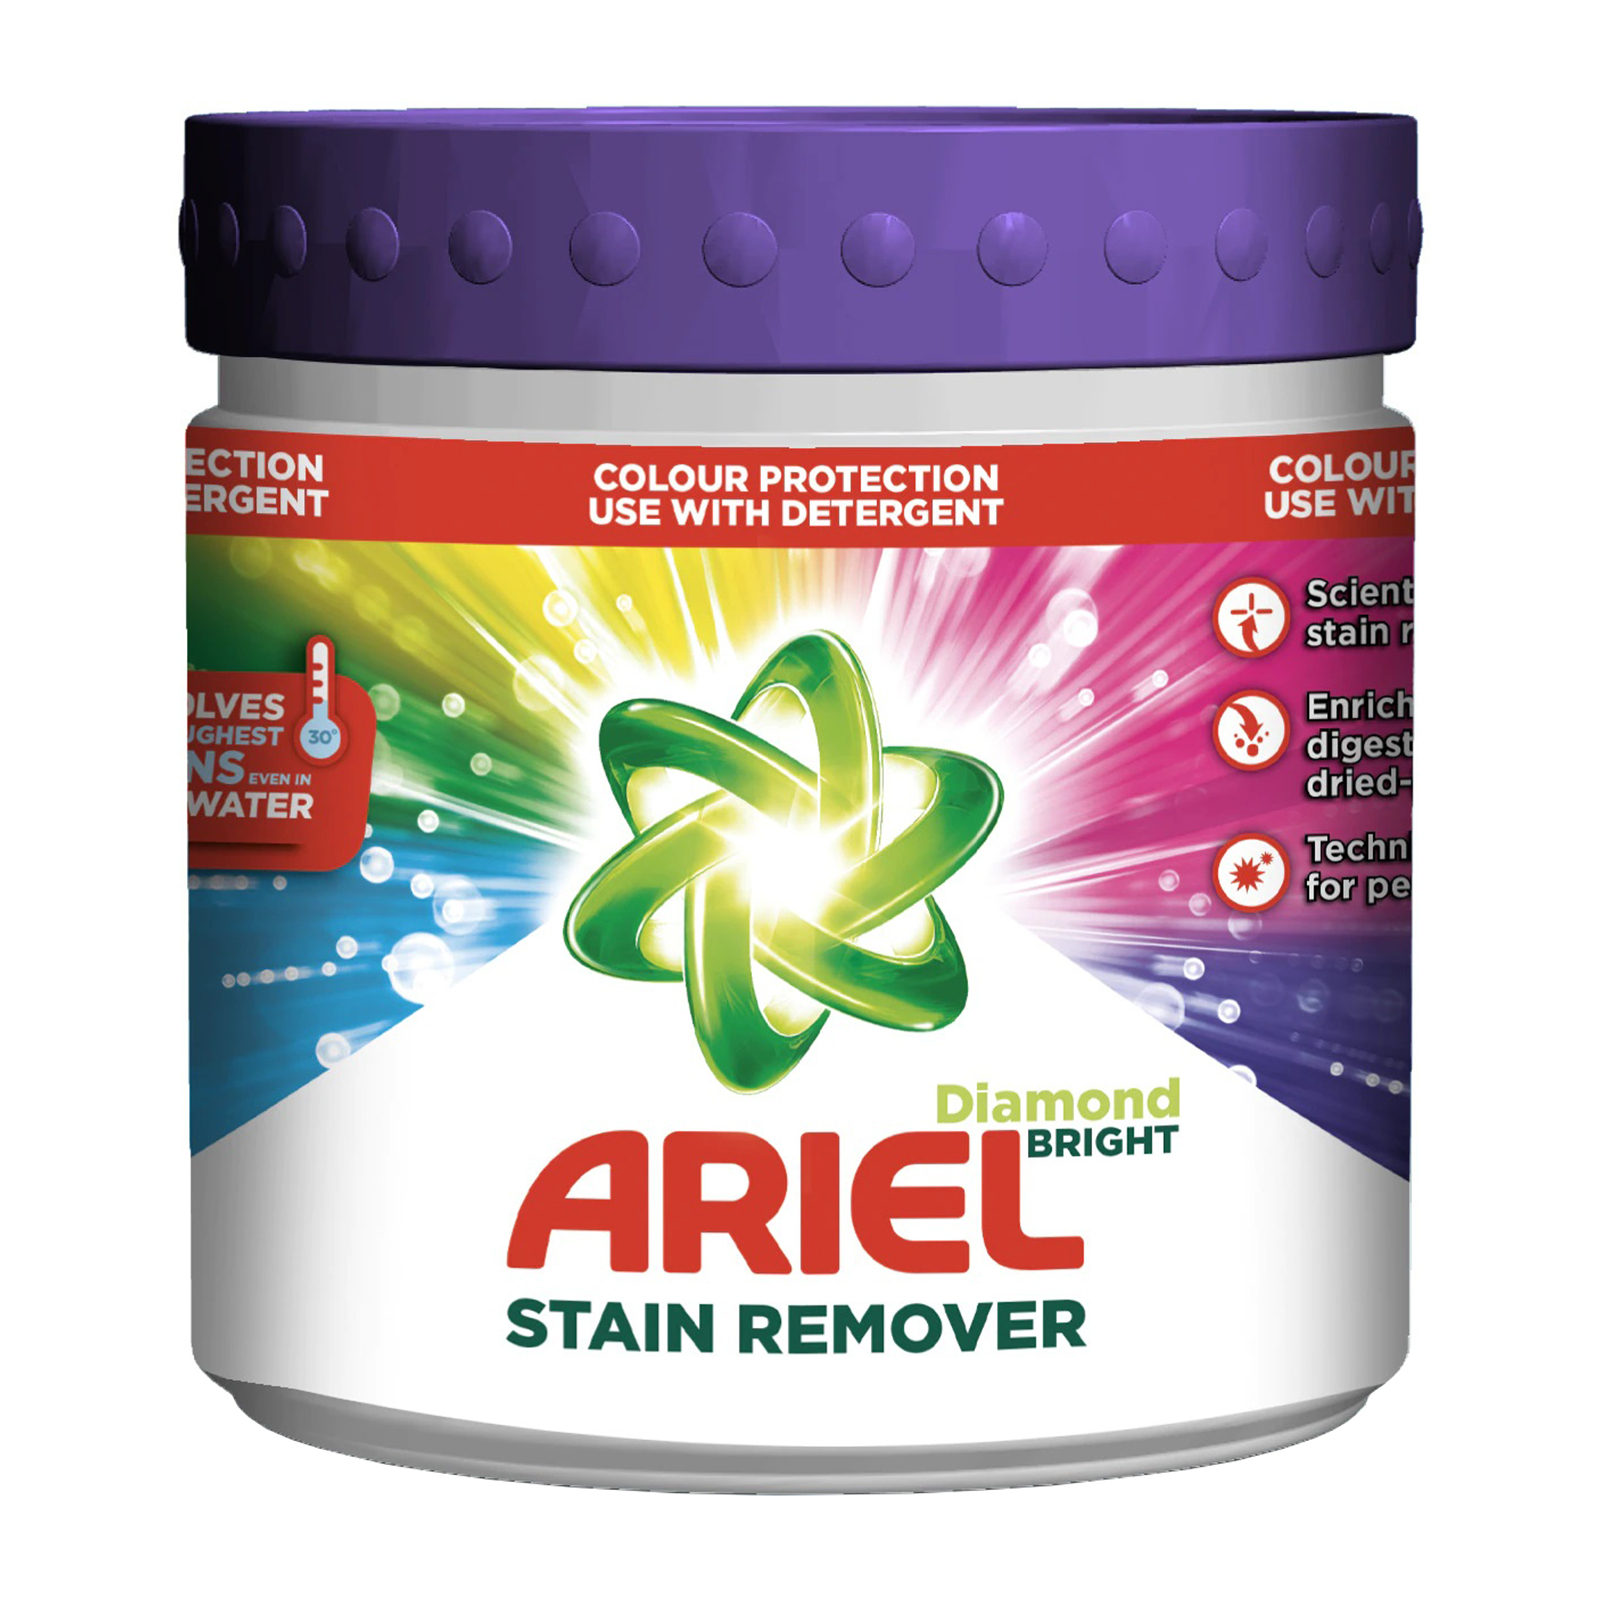 Средство для удаления пятен Ariel Color гранулы 500 г (8435495821717)